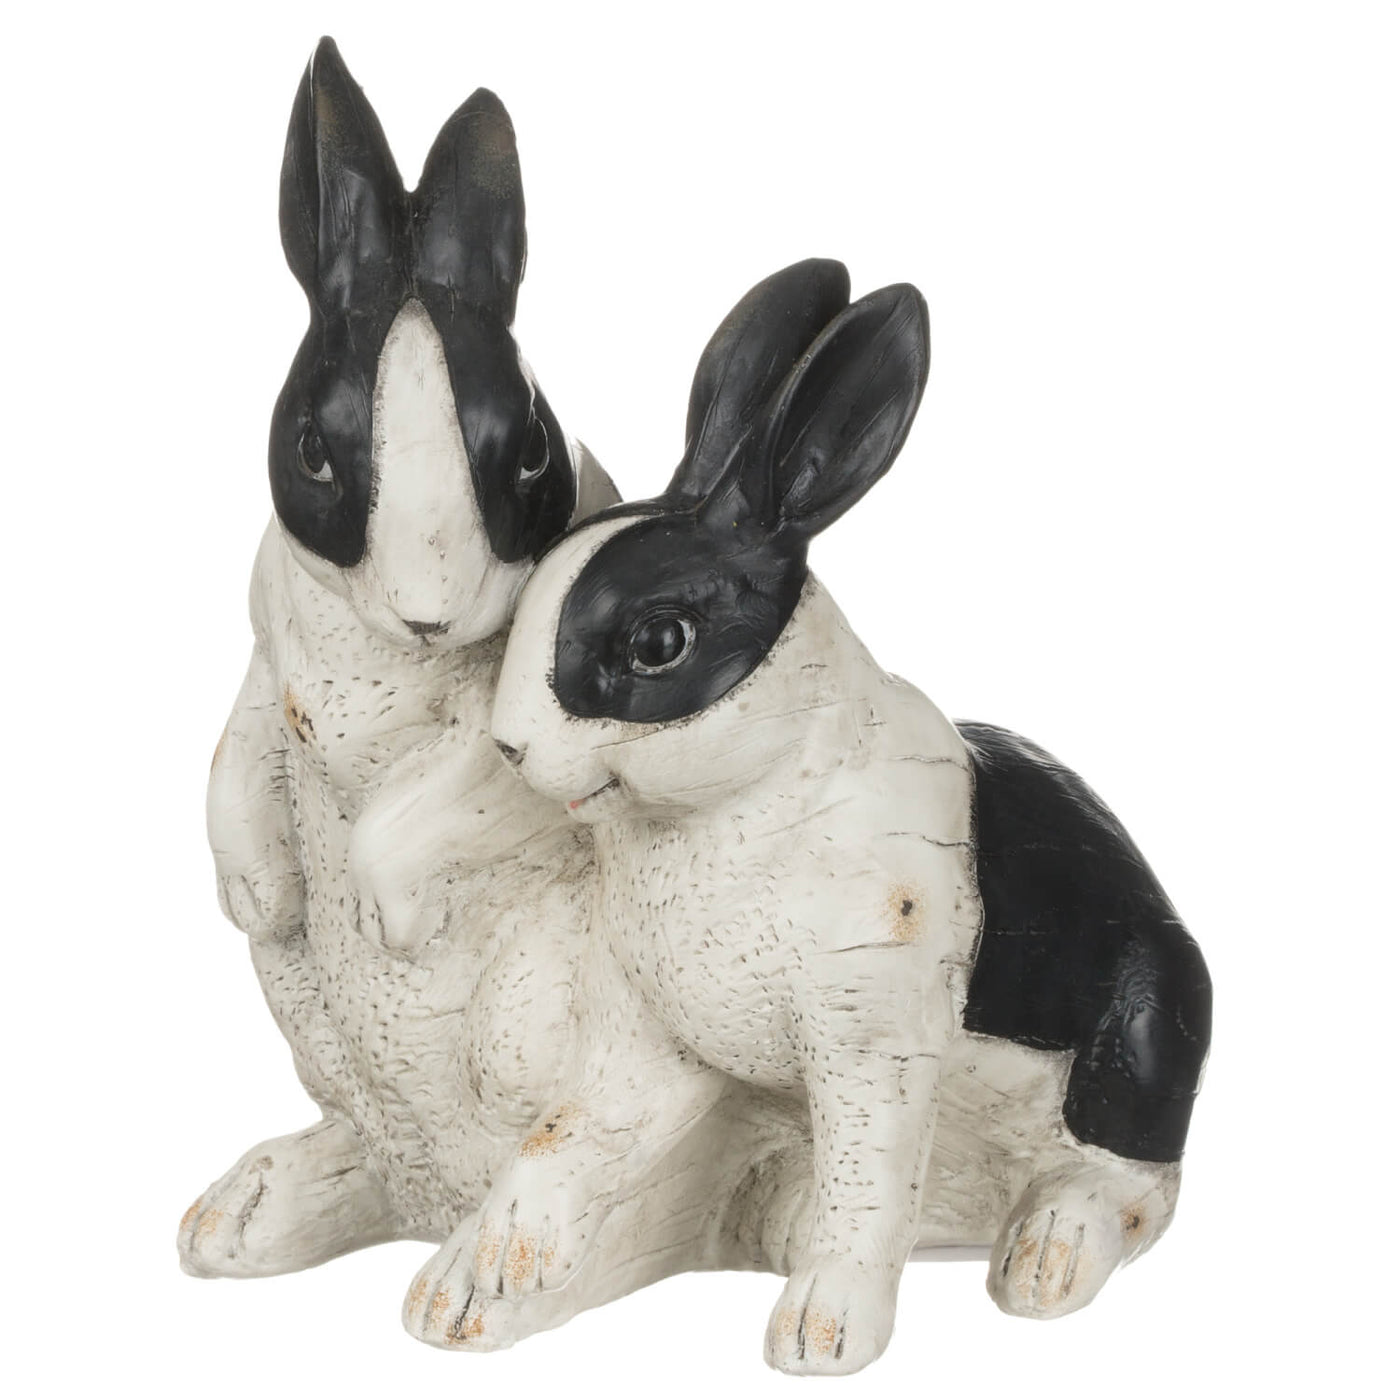 Black and white rabbit pair figurine